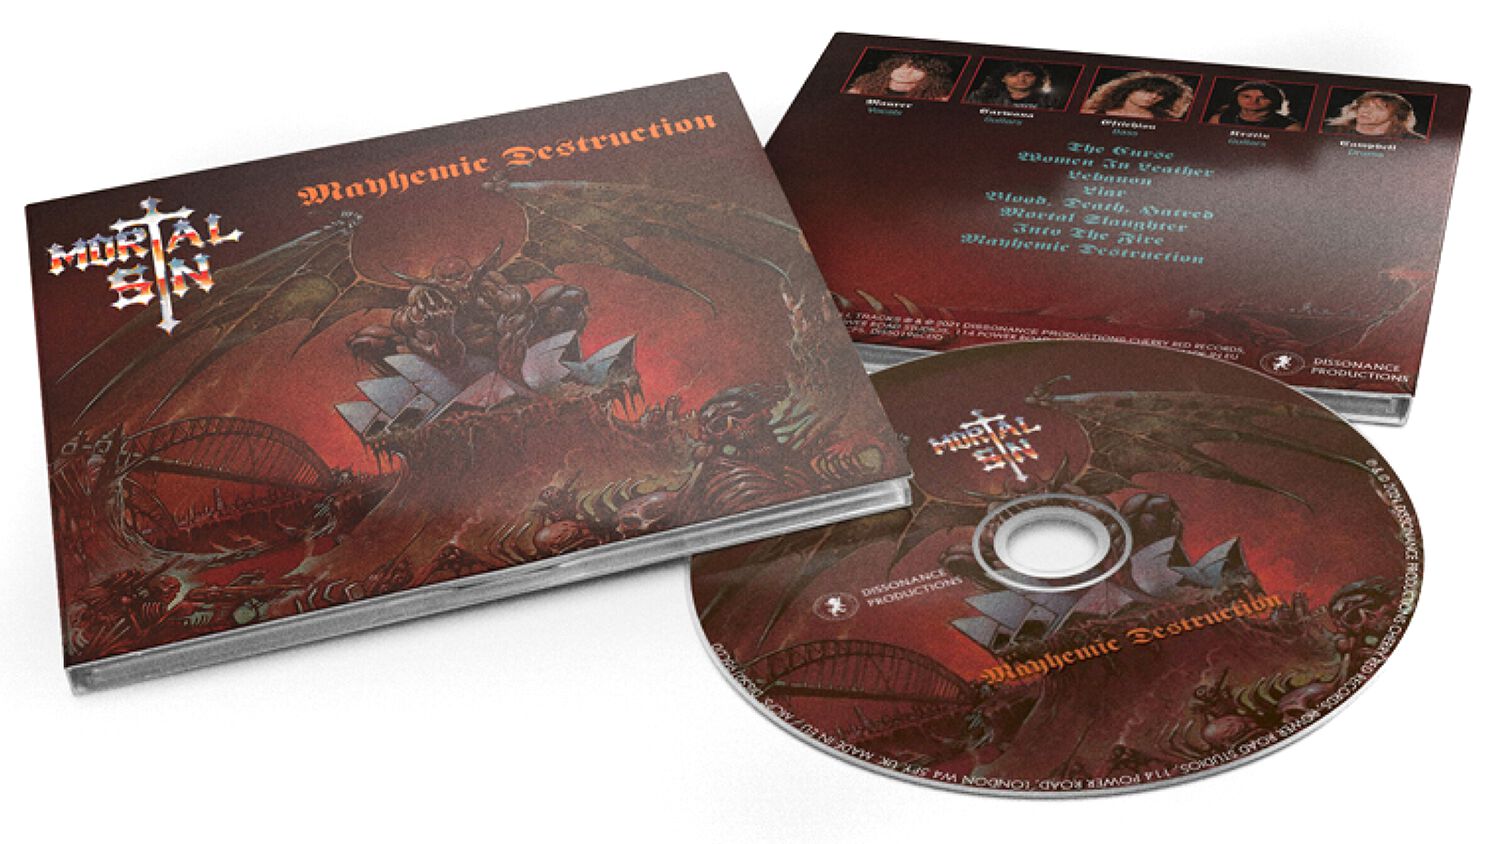 Mortal Sin Mayhemic destruction CD multicolor